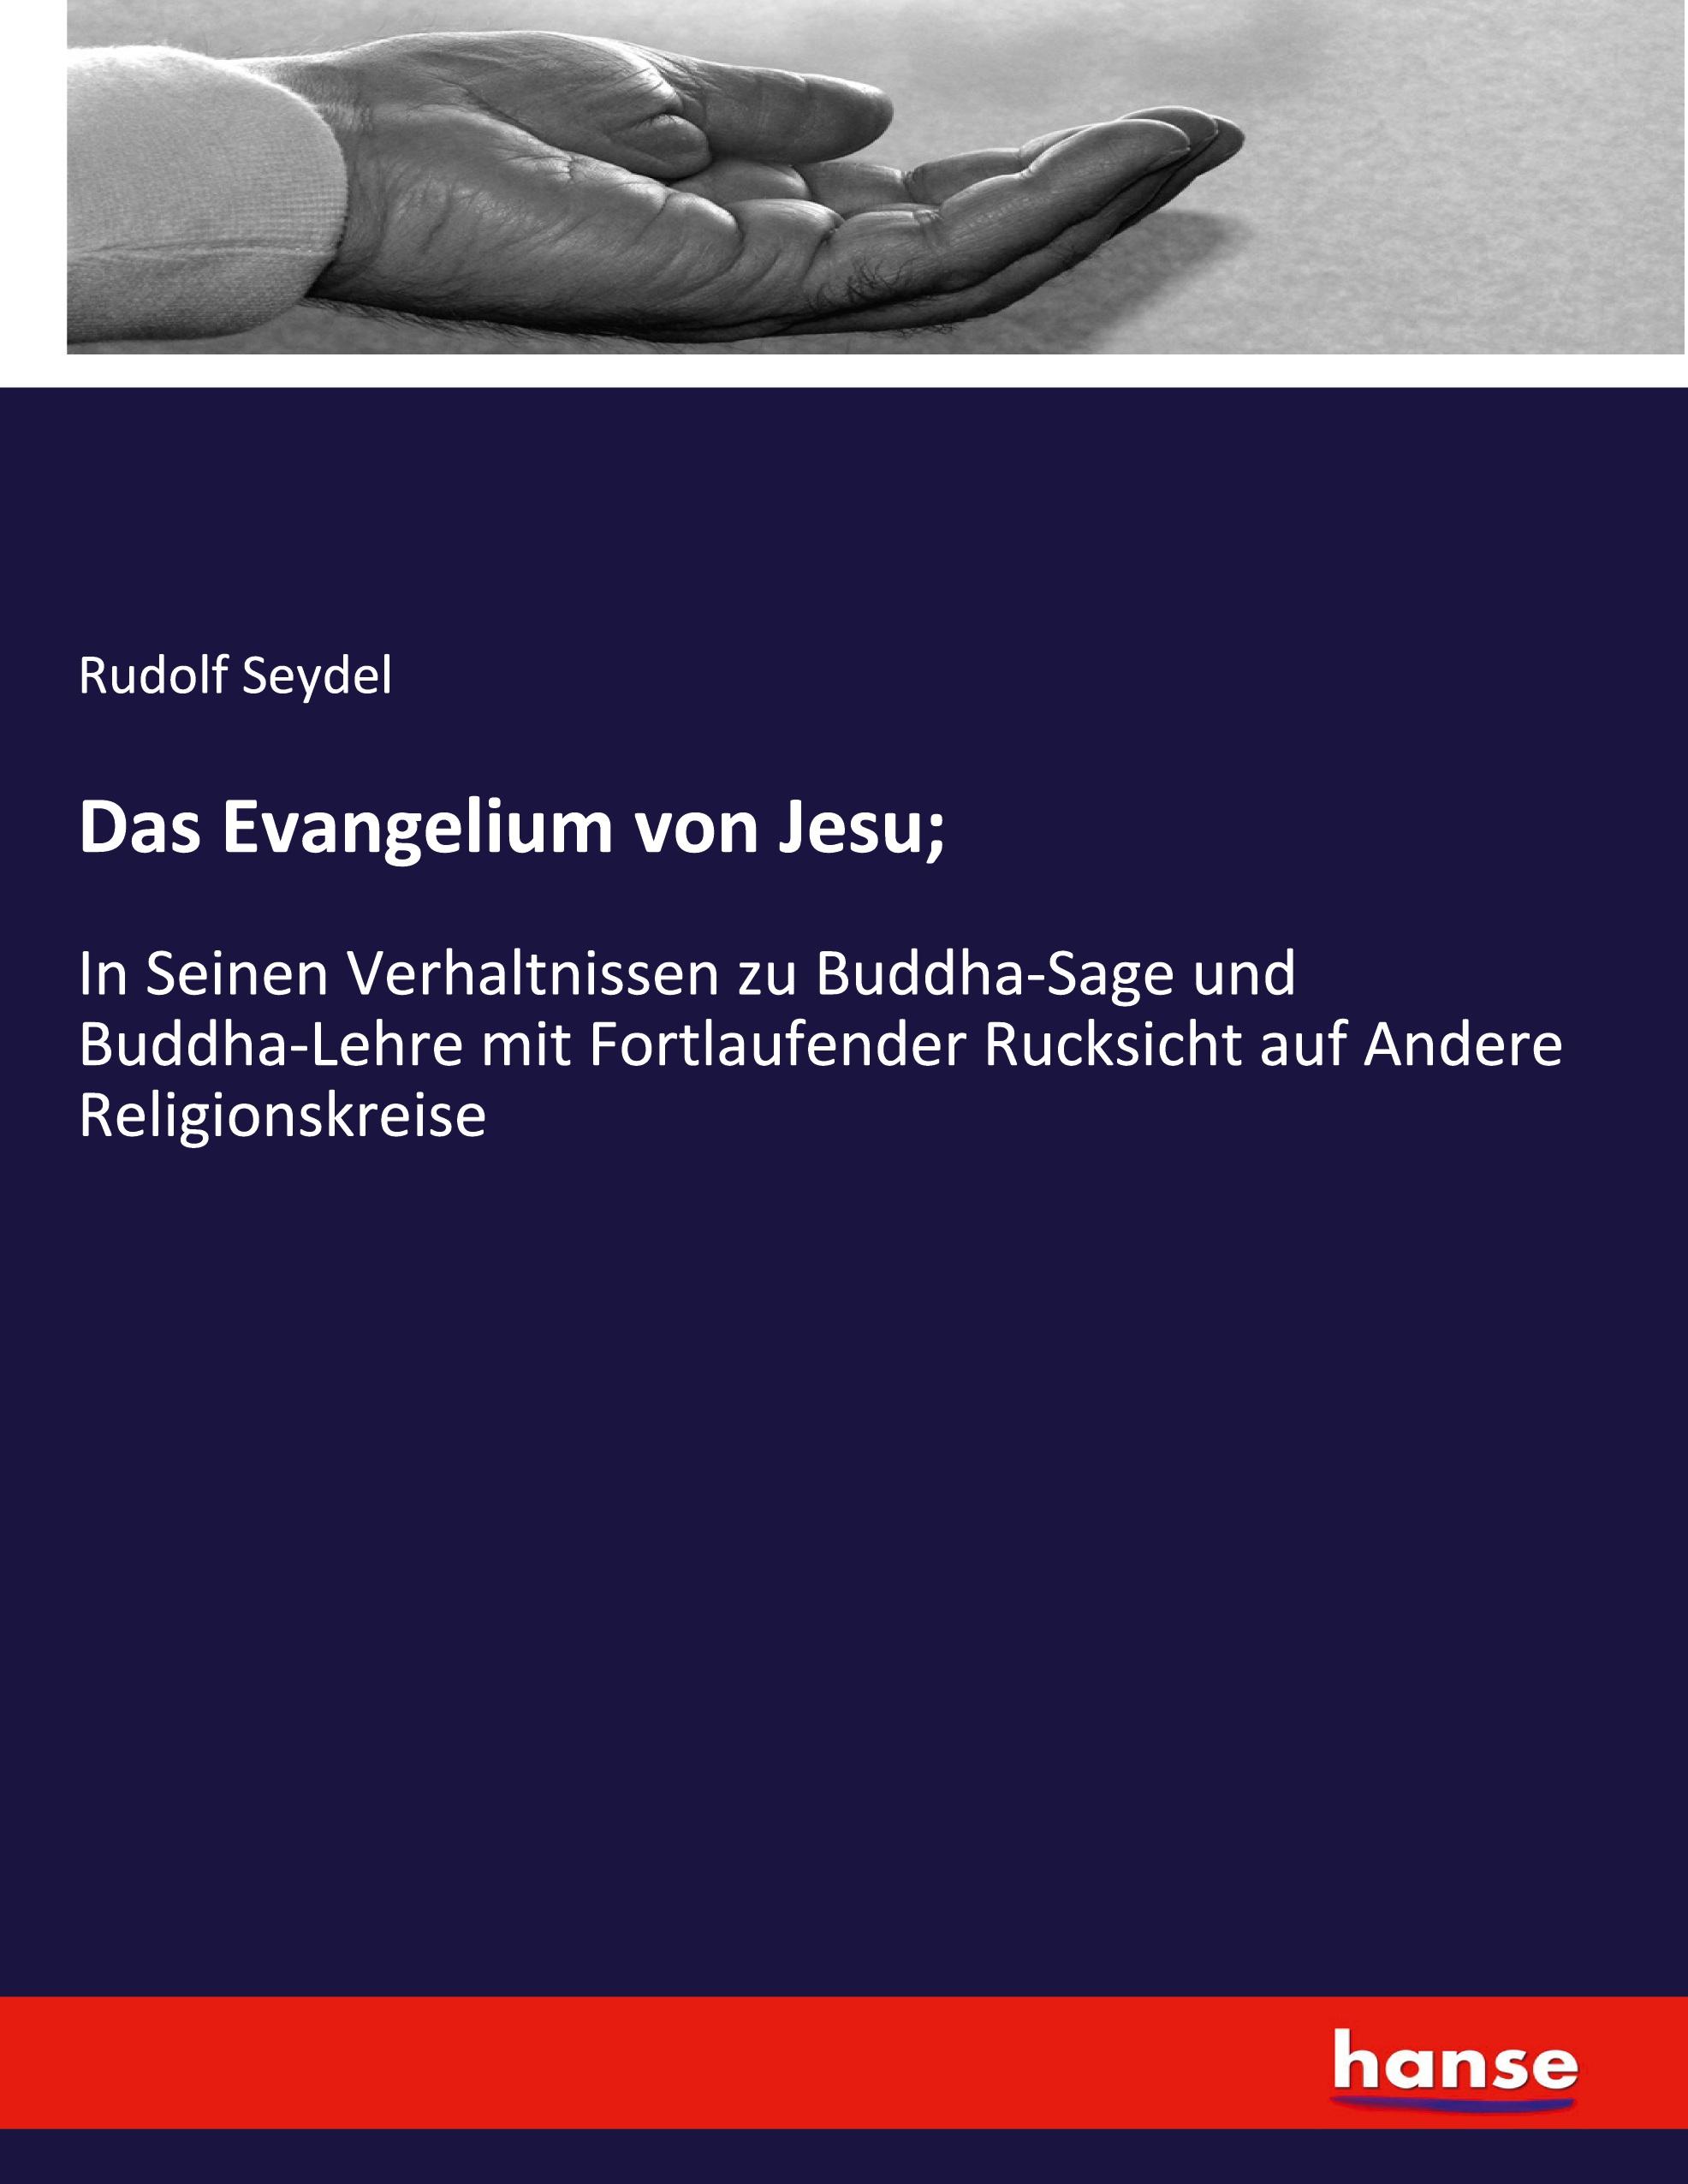 Das Evangelium von Jesu - Seydel, Rudolf